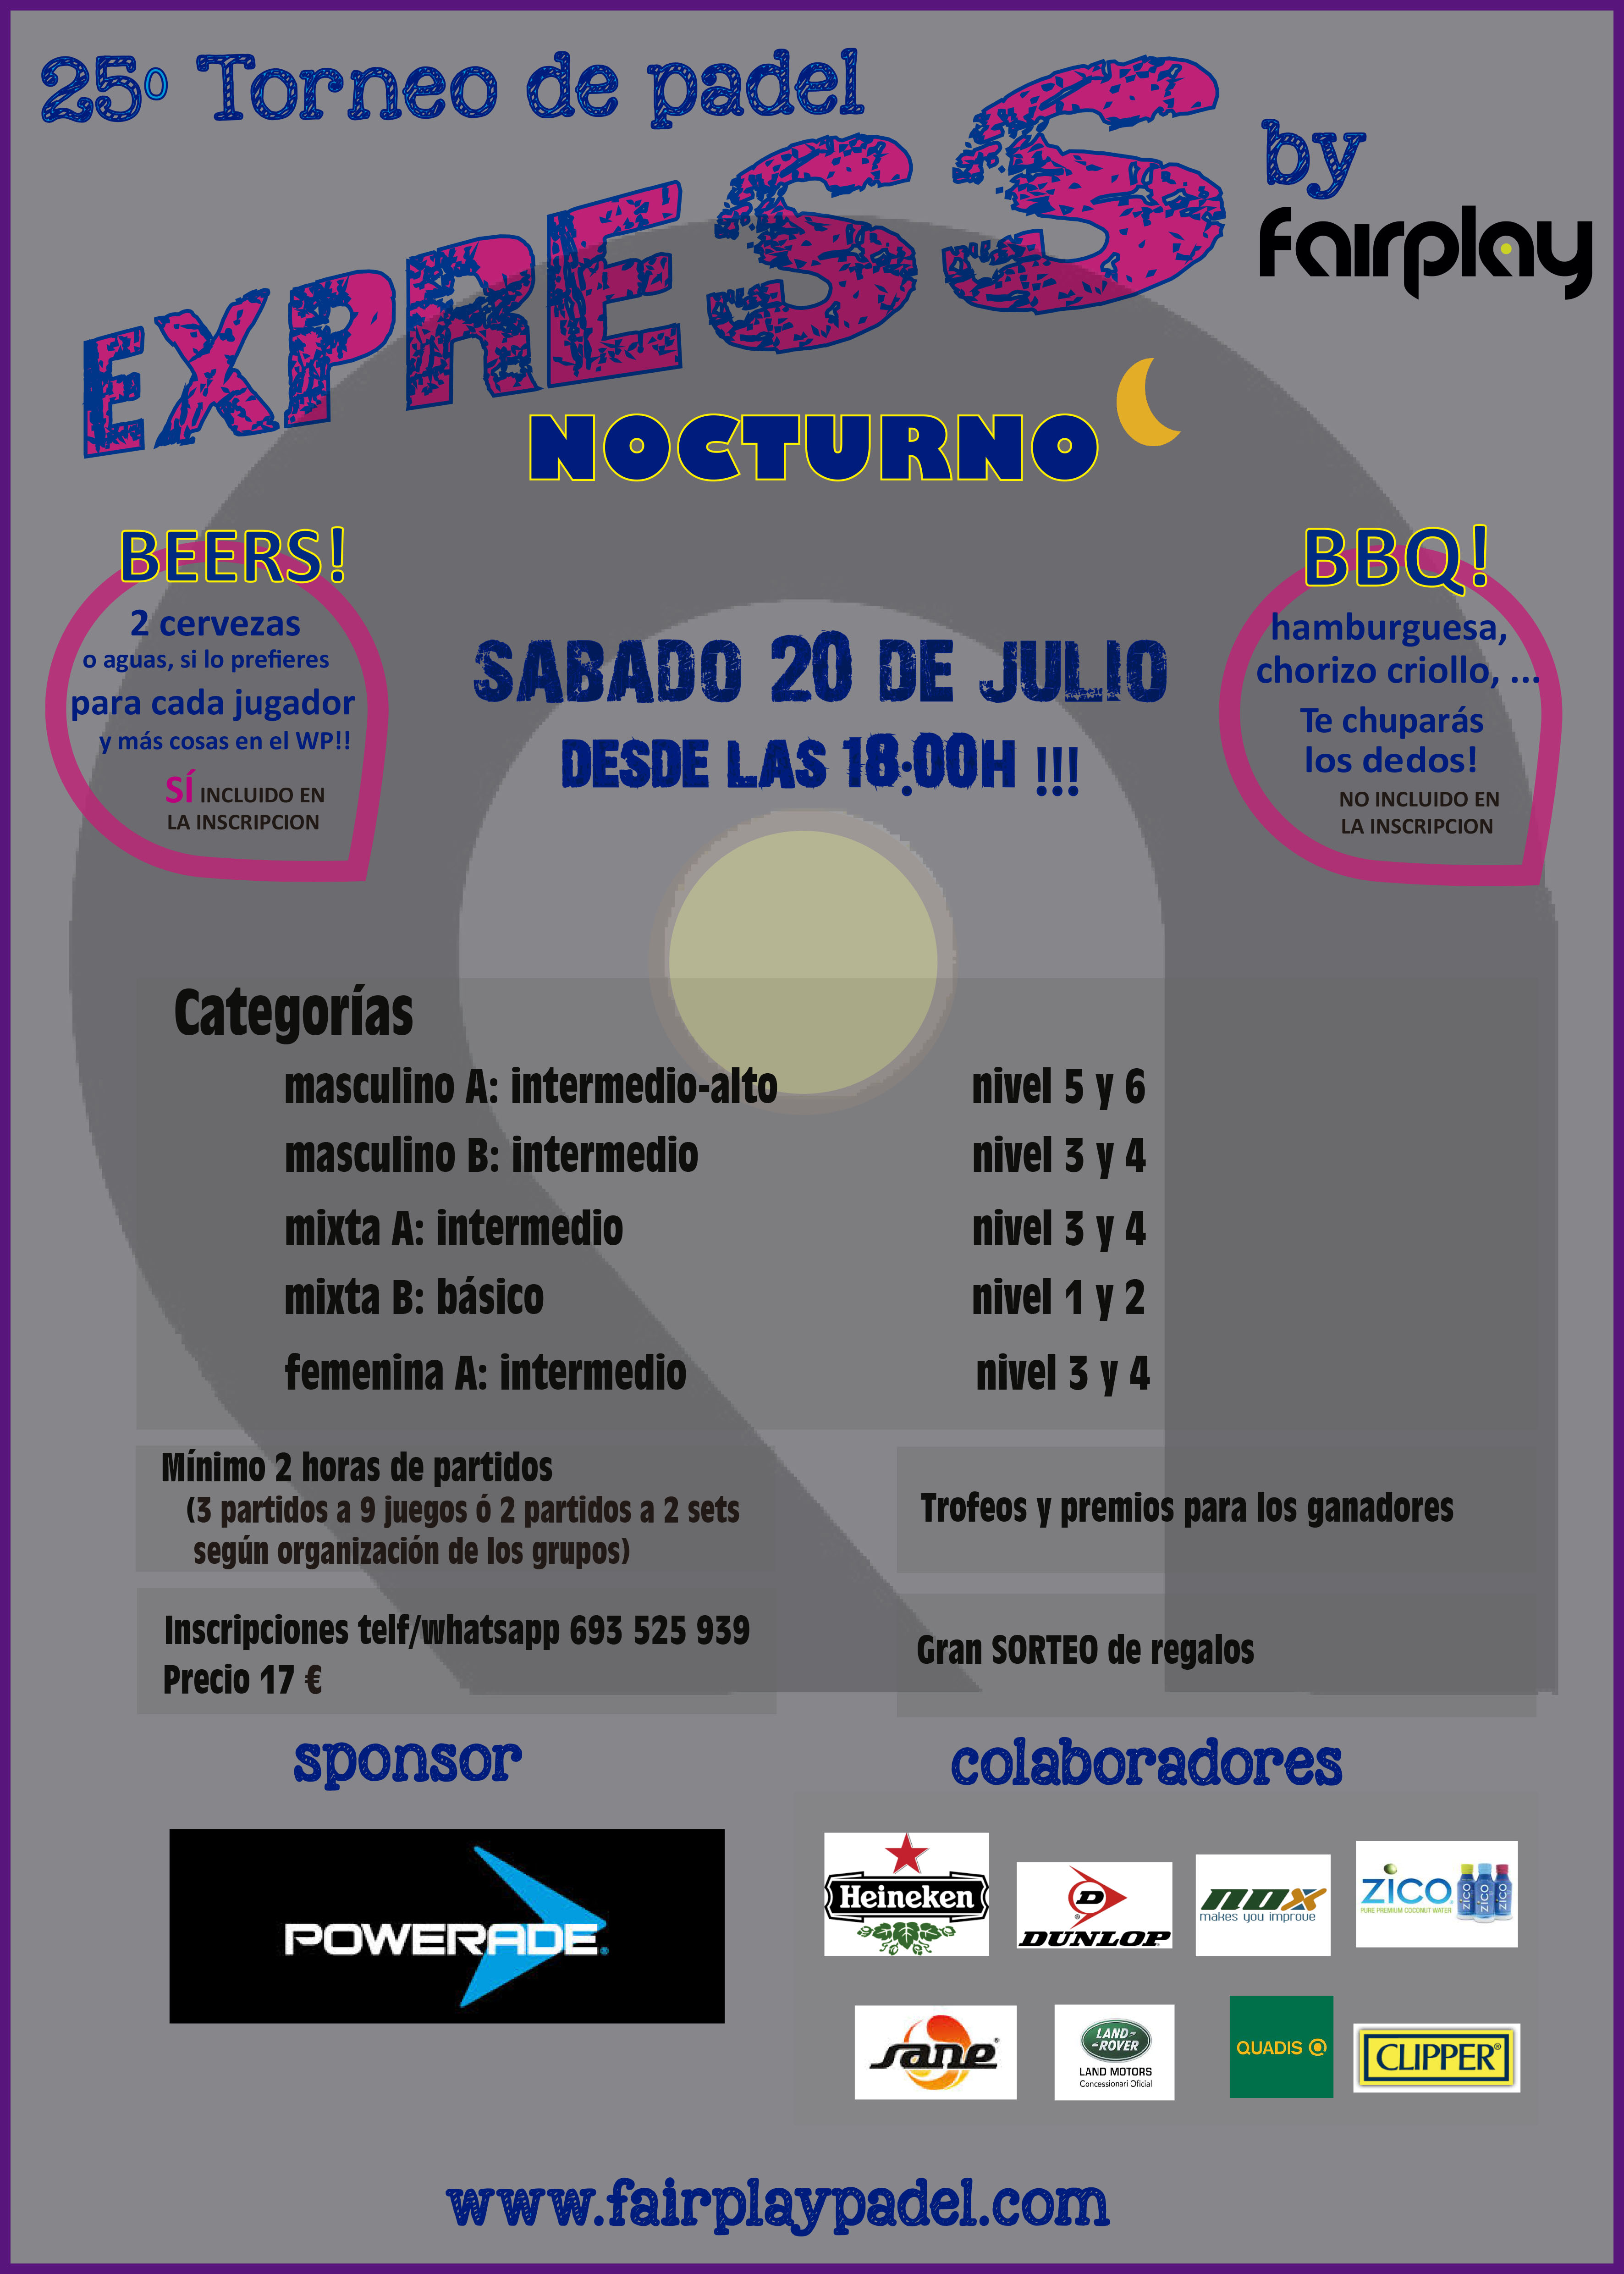 Torneo Express Nocturno (20 julio)